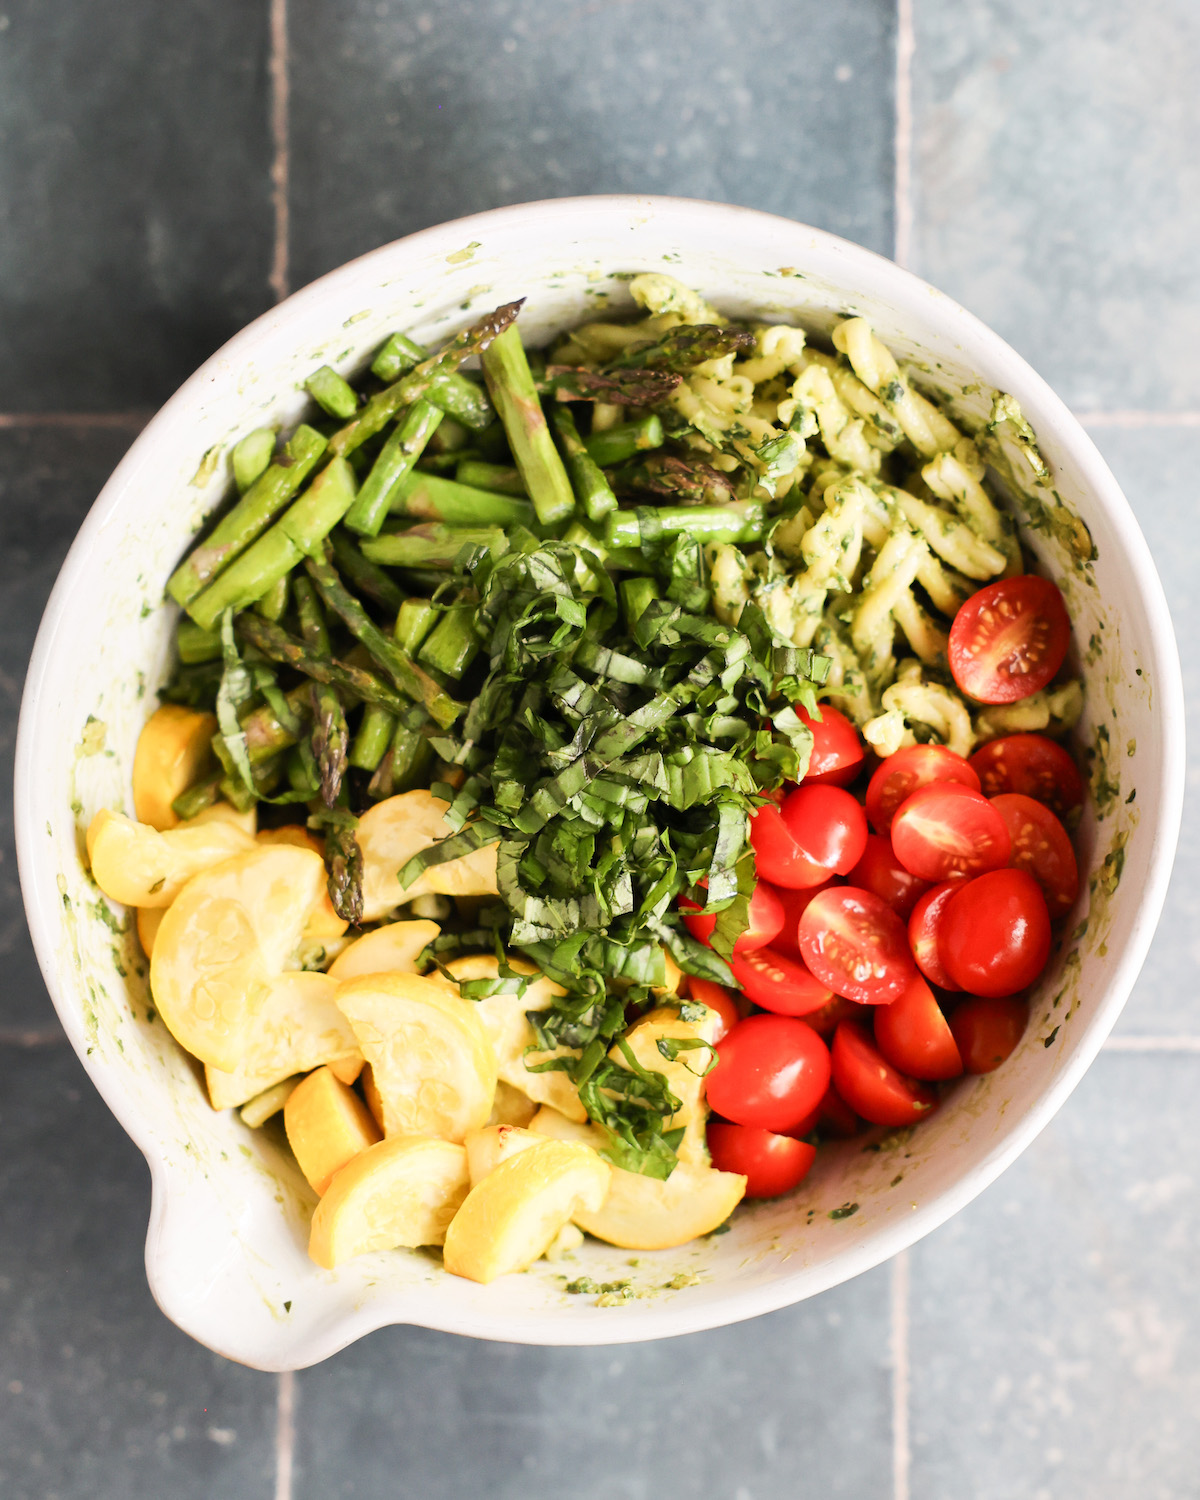 vegan pasta salad ingredients in a mixing bowl